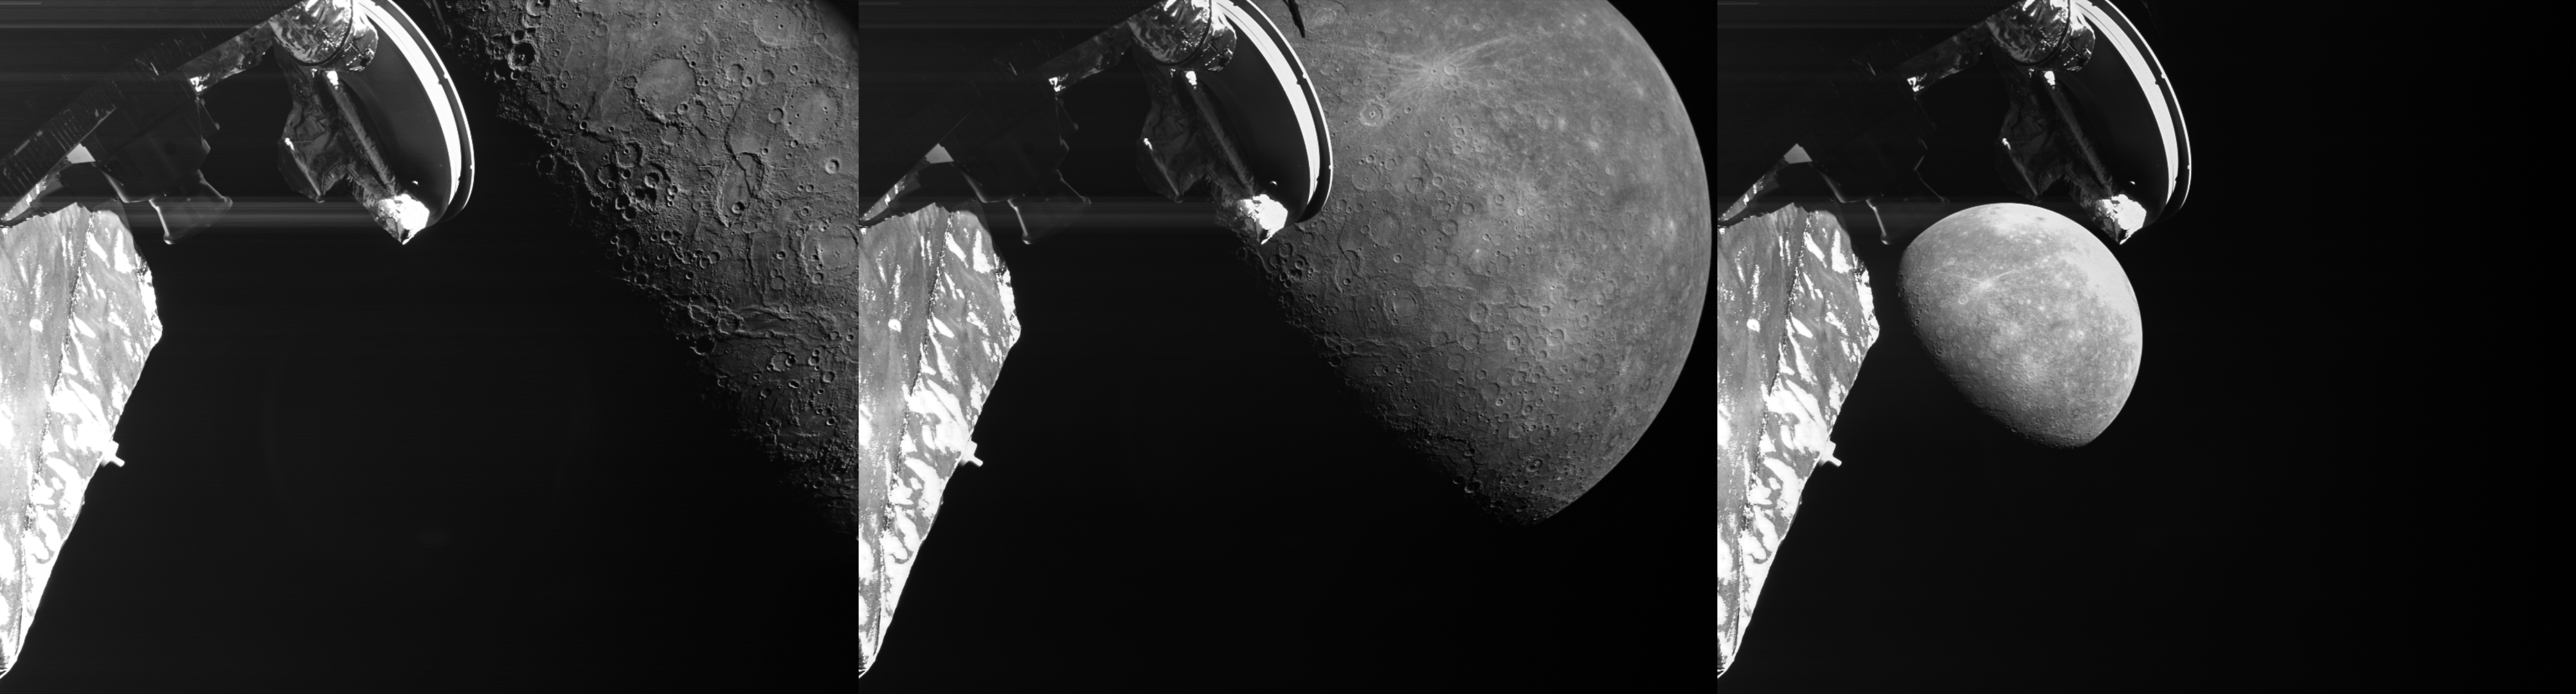 3개의 이미지는 Mercury의 세 번째 BepiColombo 저공비행을 강조합니다.